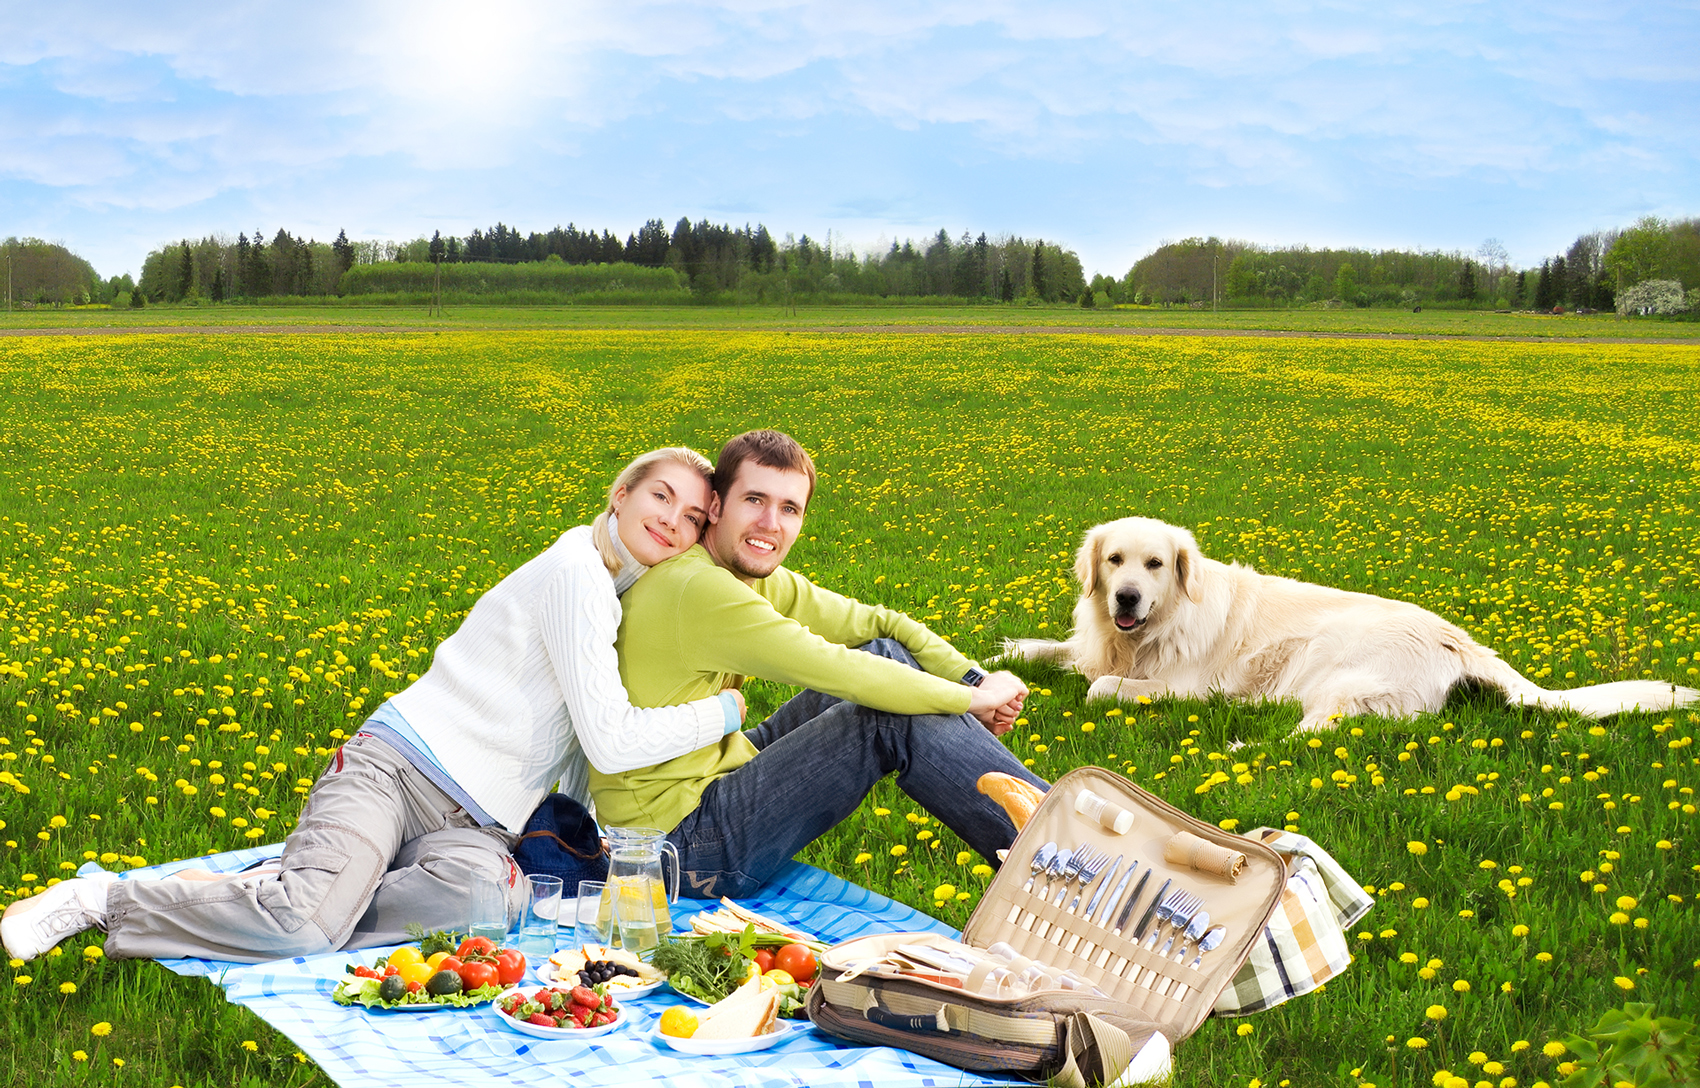 Take a picnic to a pet-friendly park